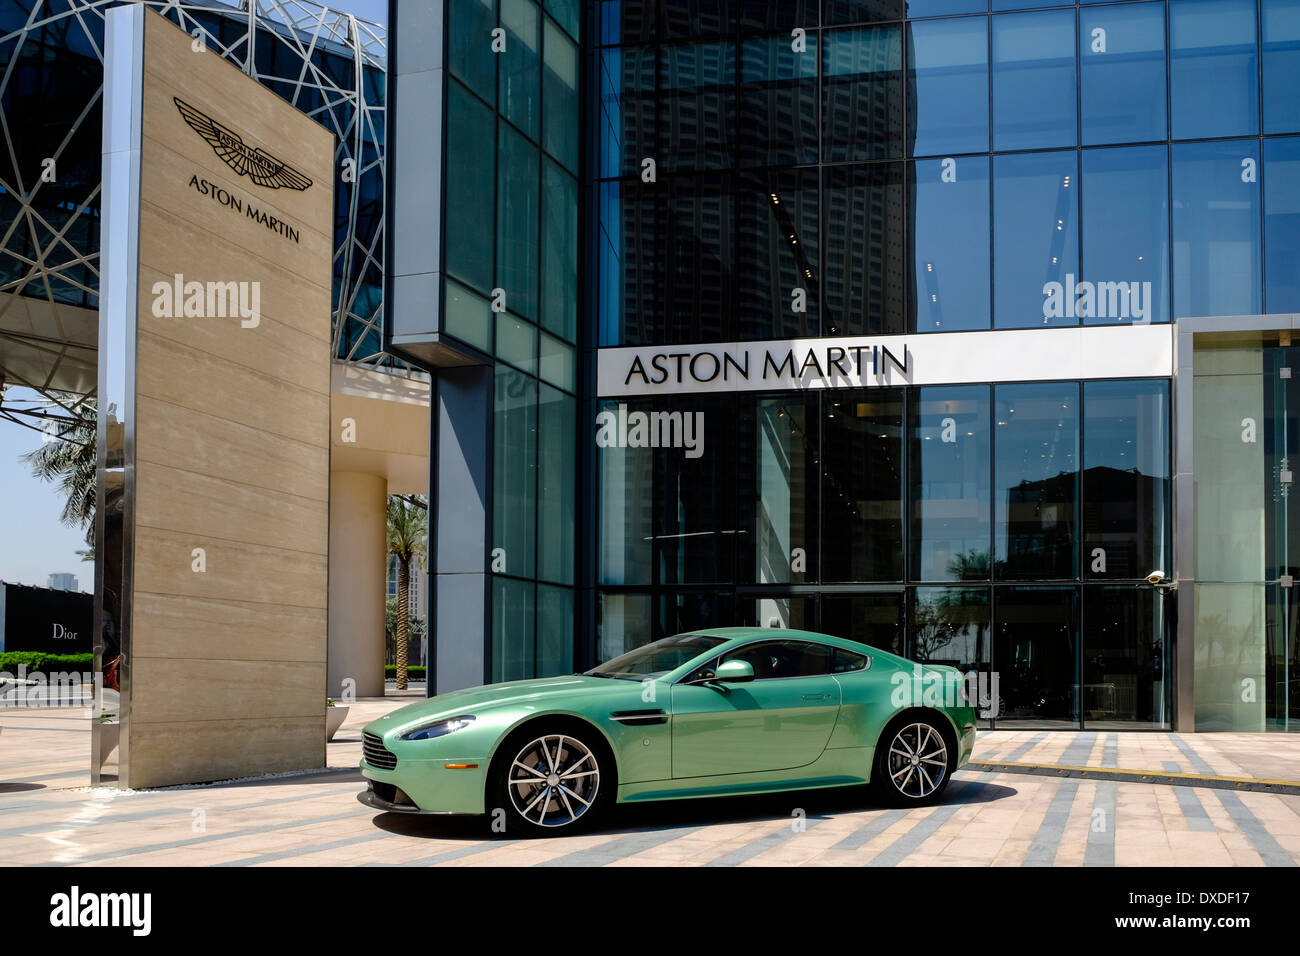 Showroom von Aston Martin Luxusautos in Dubai Vereinigte Arabische Emirate  Stockfotografie - Alamy